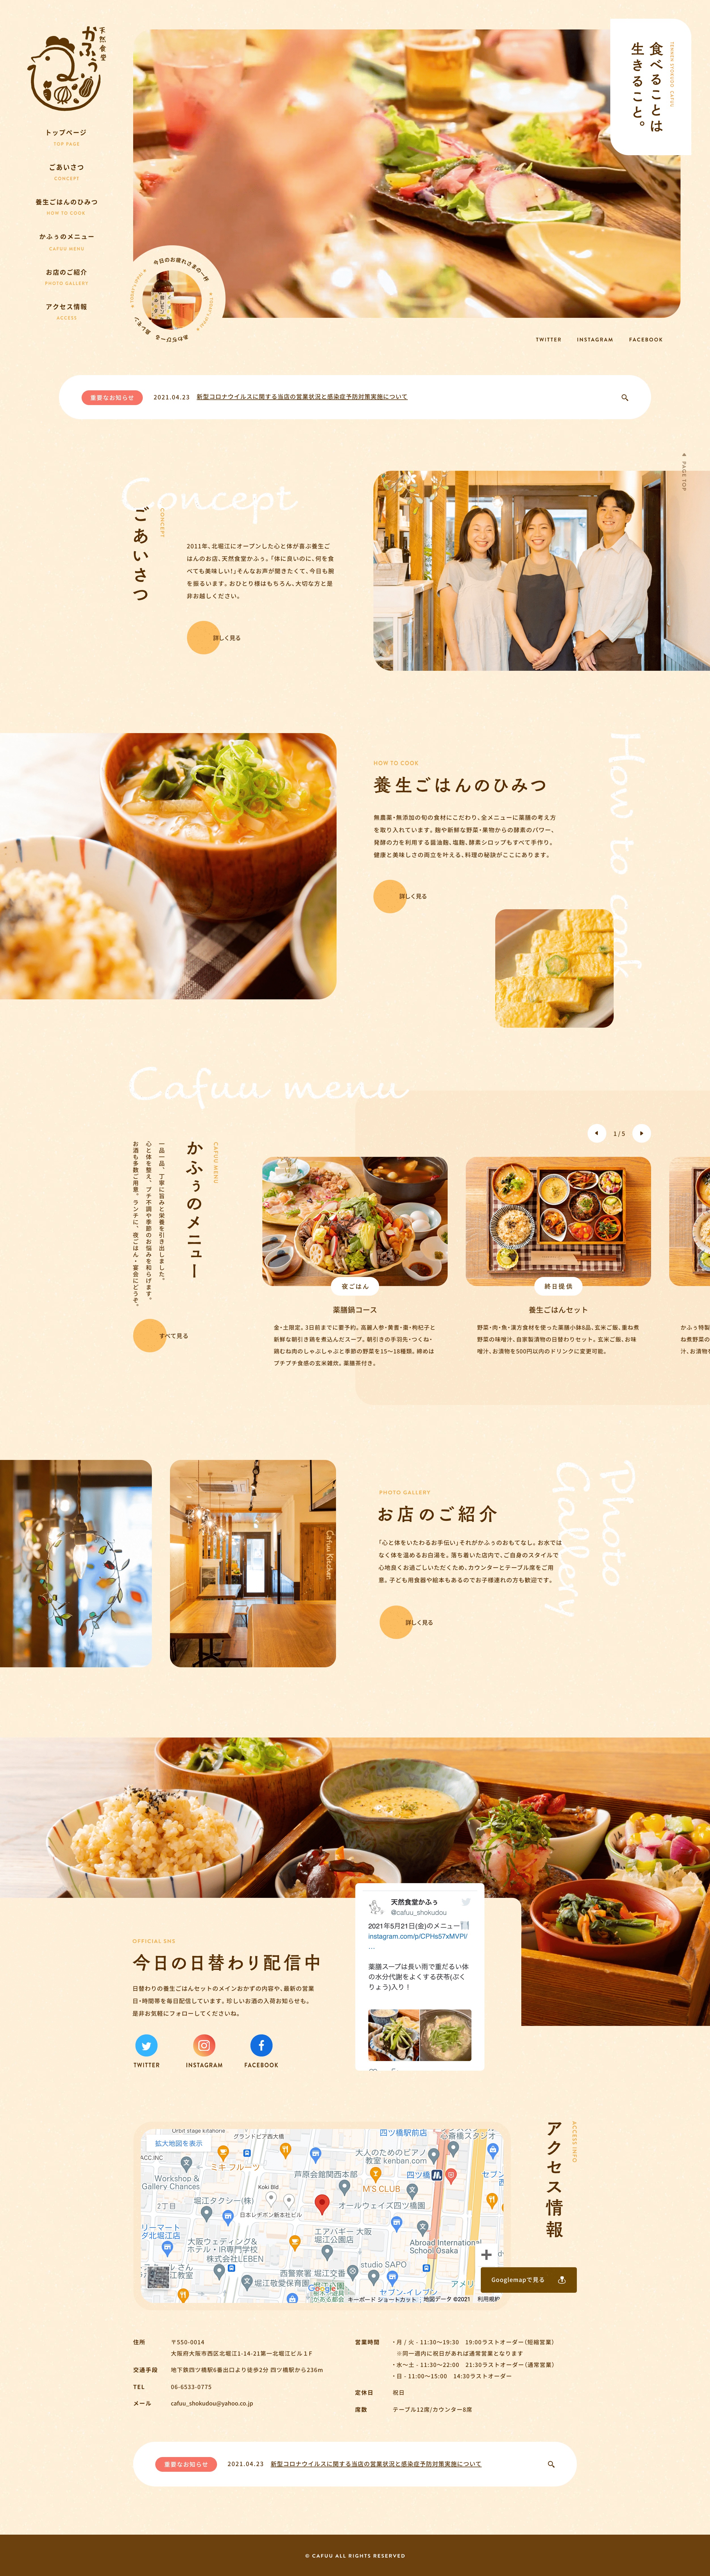 大阪cafuu餐厅网站设计